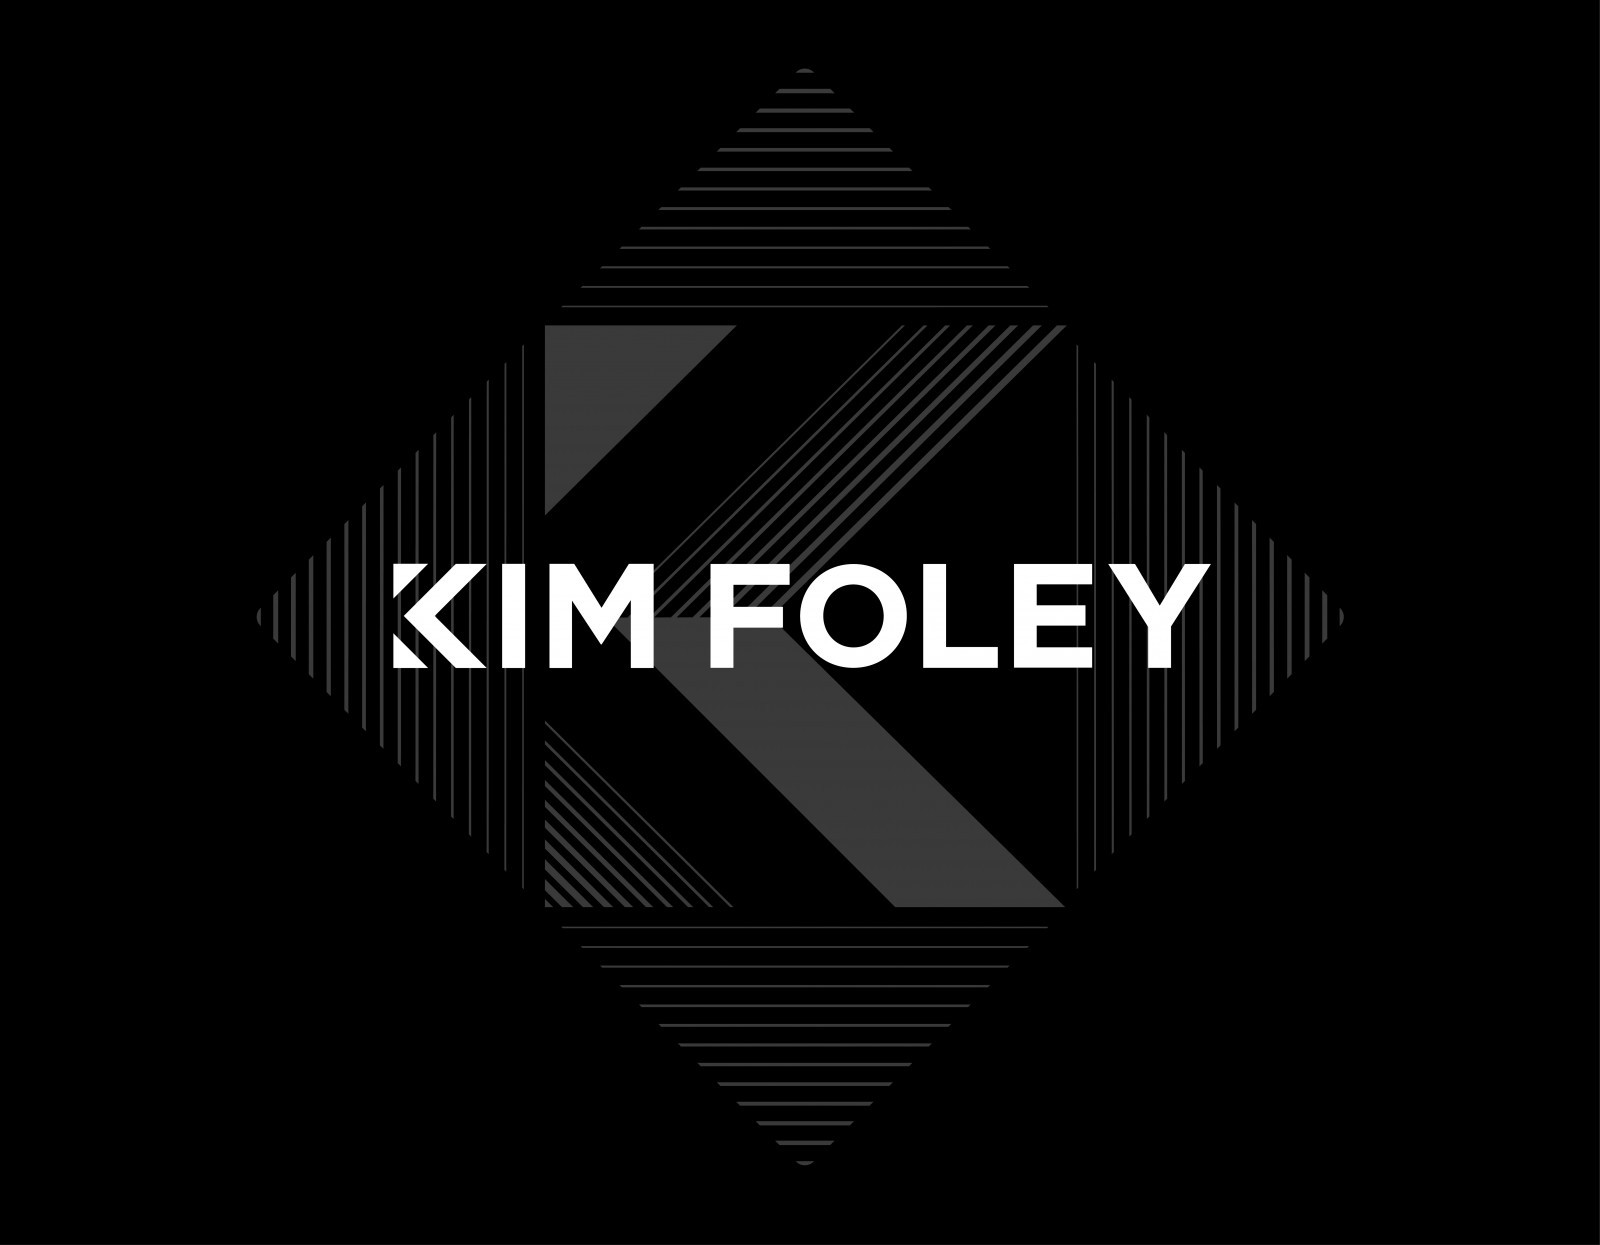 Kim Foley Bespoke Luxury Leather Goods